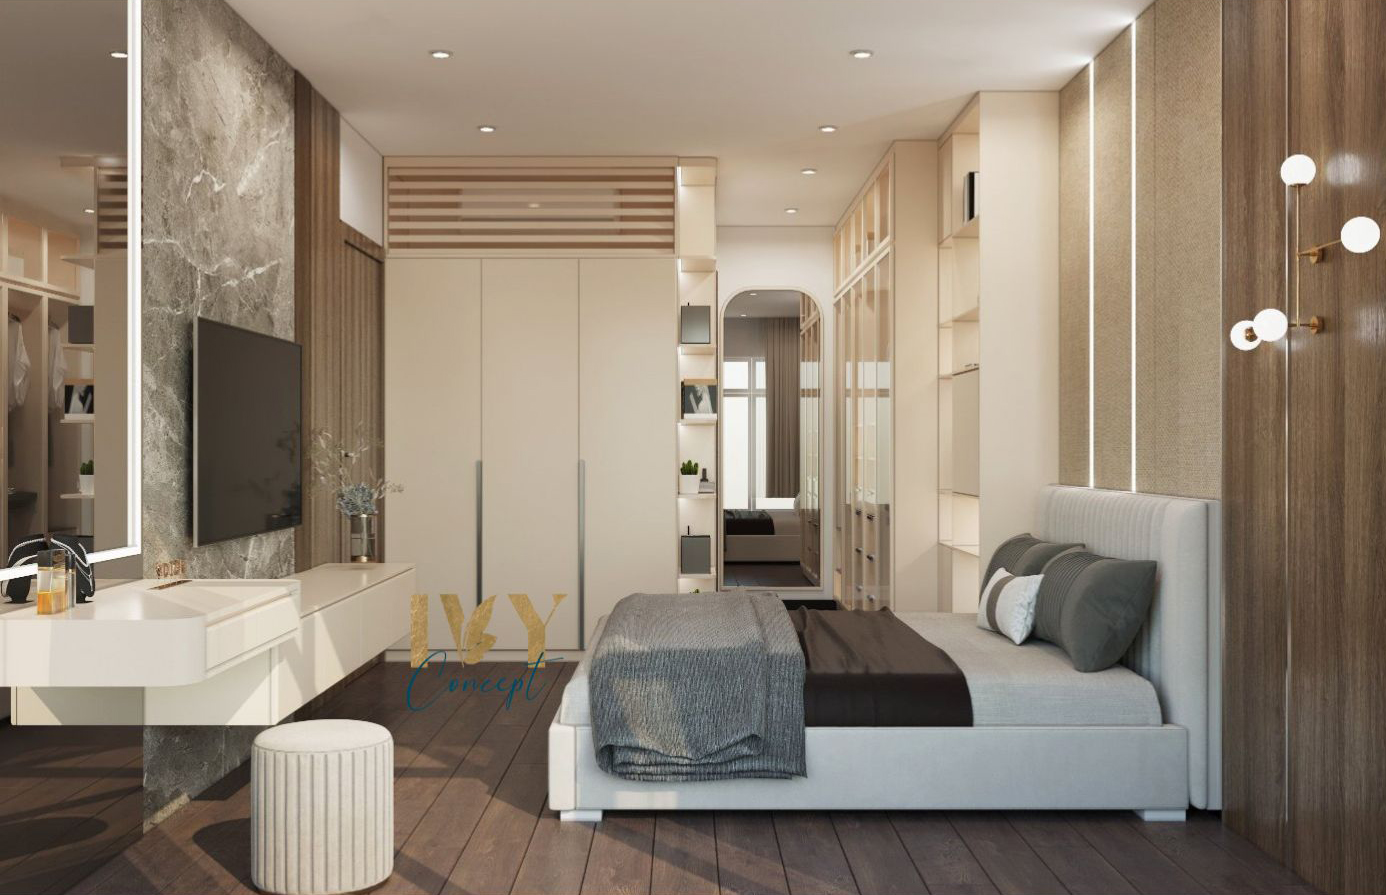 Phòng ngủ, phong cách Hiện đại Modern, thiết kế concept nội thất, căn hộ Petro Landmark